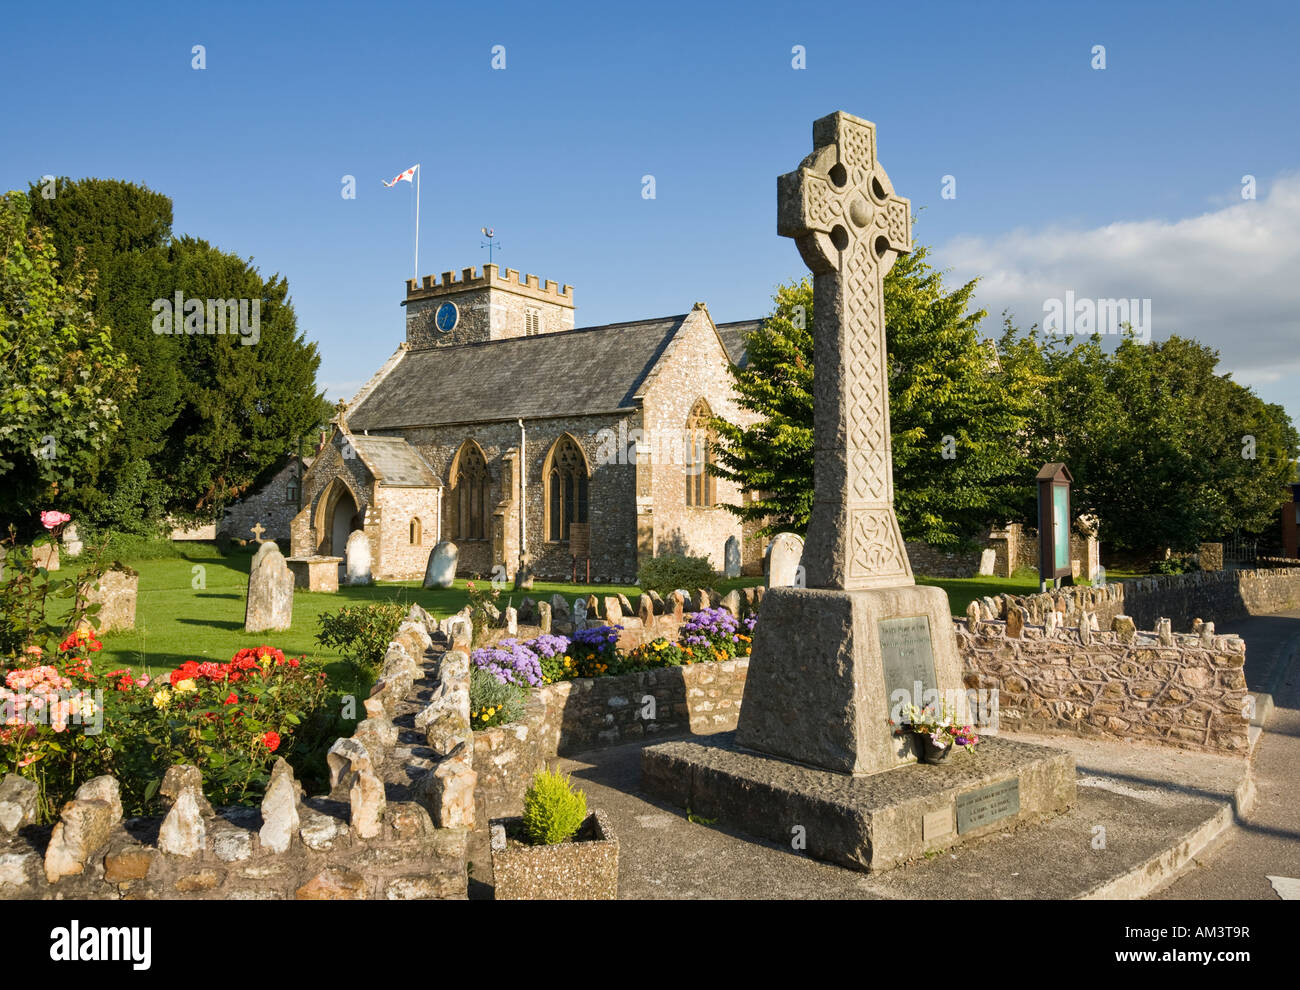 Englisches Dorf-Kirche von Str. Marys und Krieg-Denkmal in Hemyock, Devon, England, UK Stockfoto